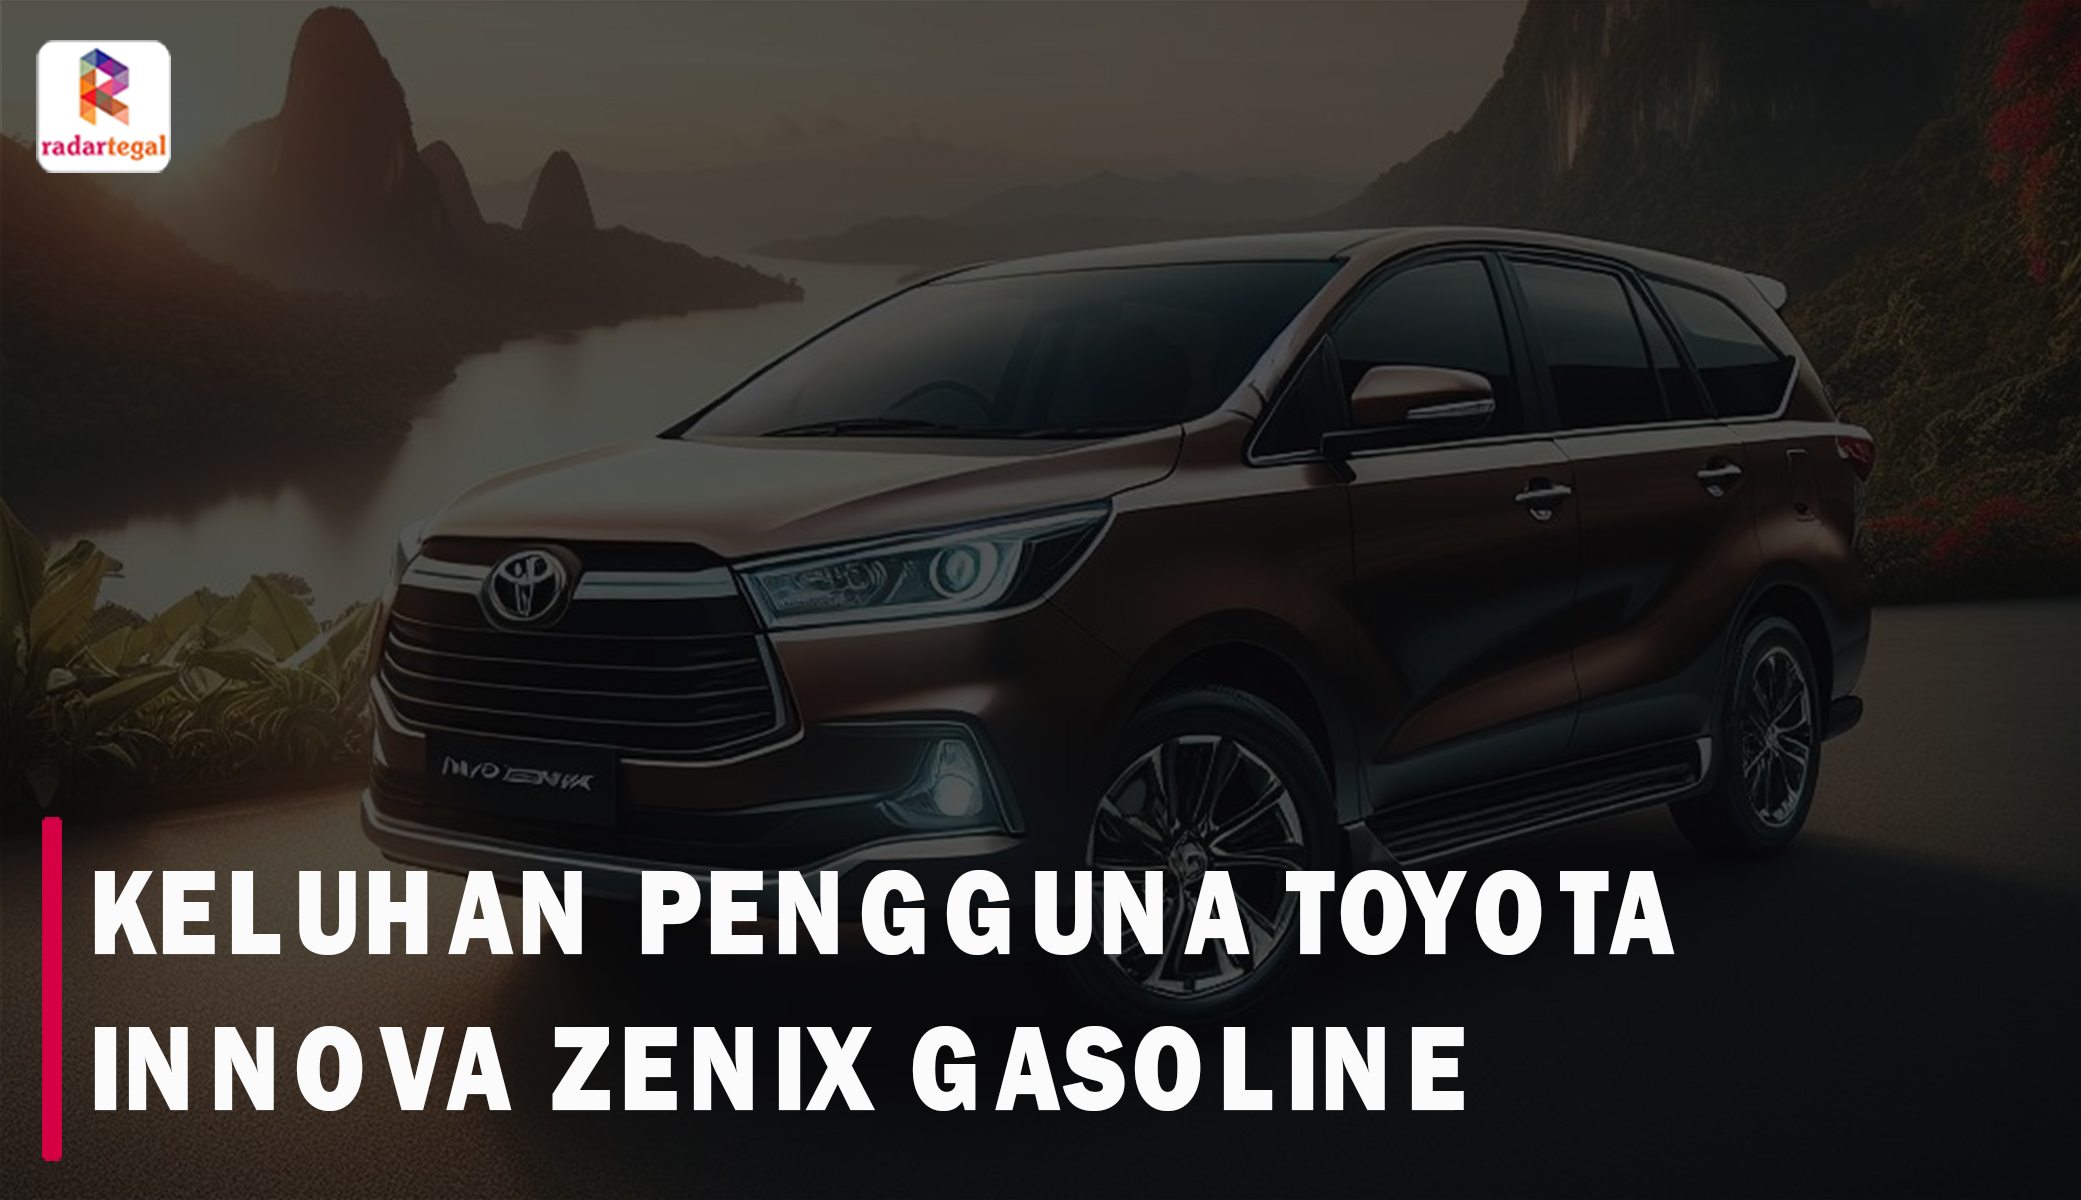 7 Keluhan Toyota Innova Zenix Gasoline yang Bikin Pengguna Kesal di Forum Otomotif, Salah Satunya Karena Boros